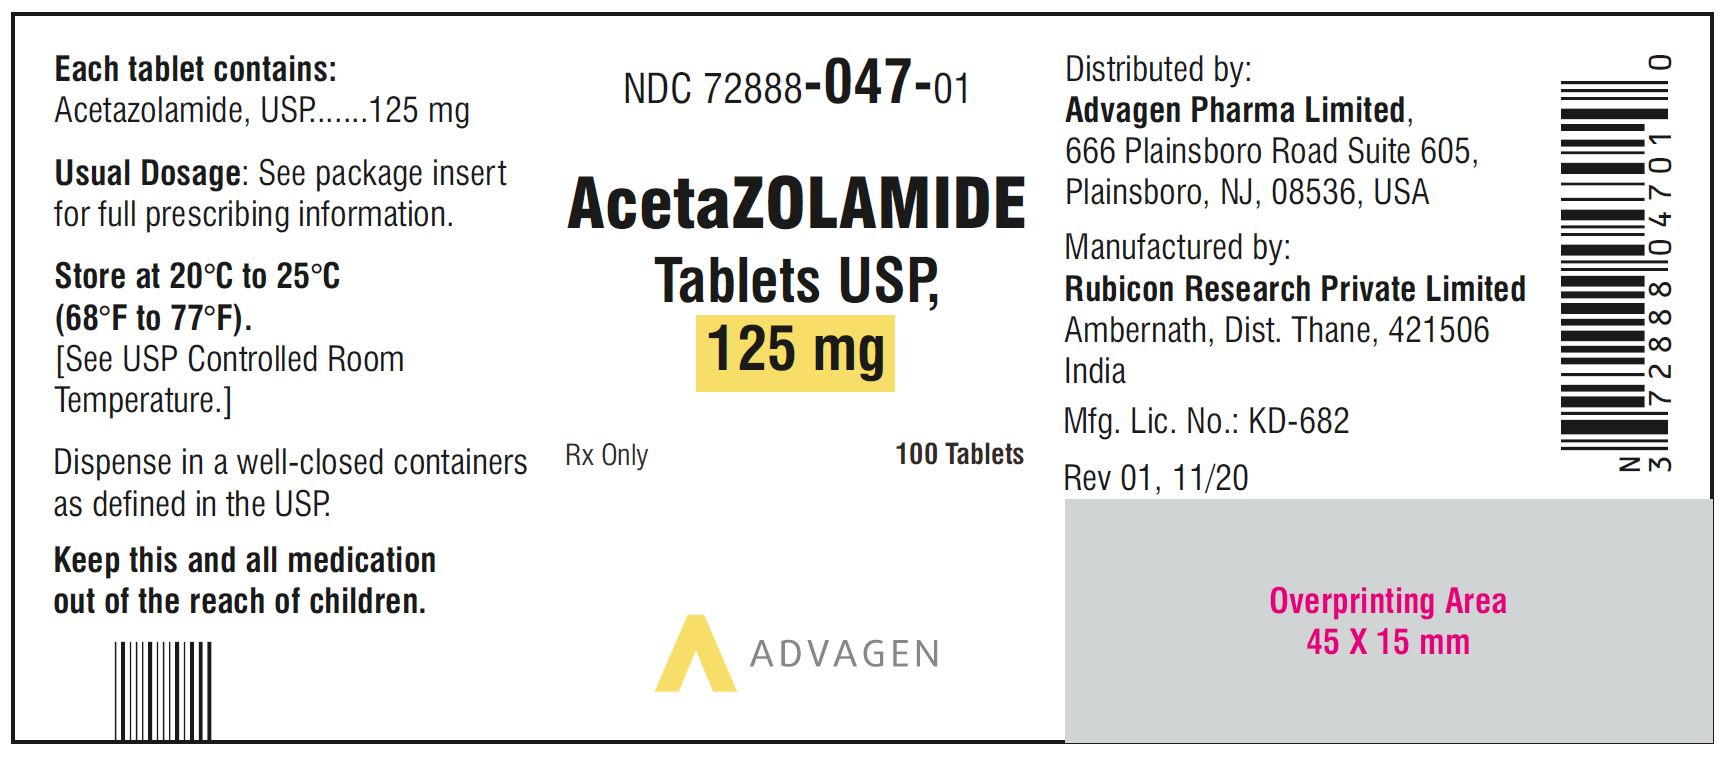 AcetaZOLAMIDE Tablets USP, 125 mg - NDC 72888-047-01 - 100 Tablets Bottle Label